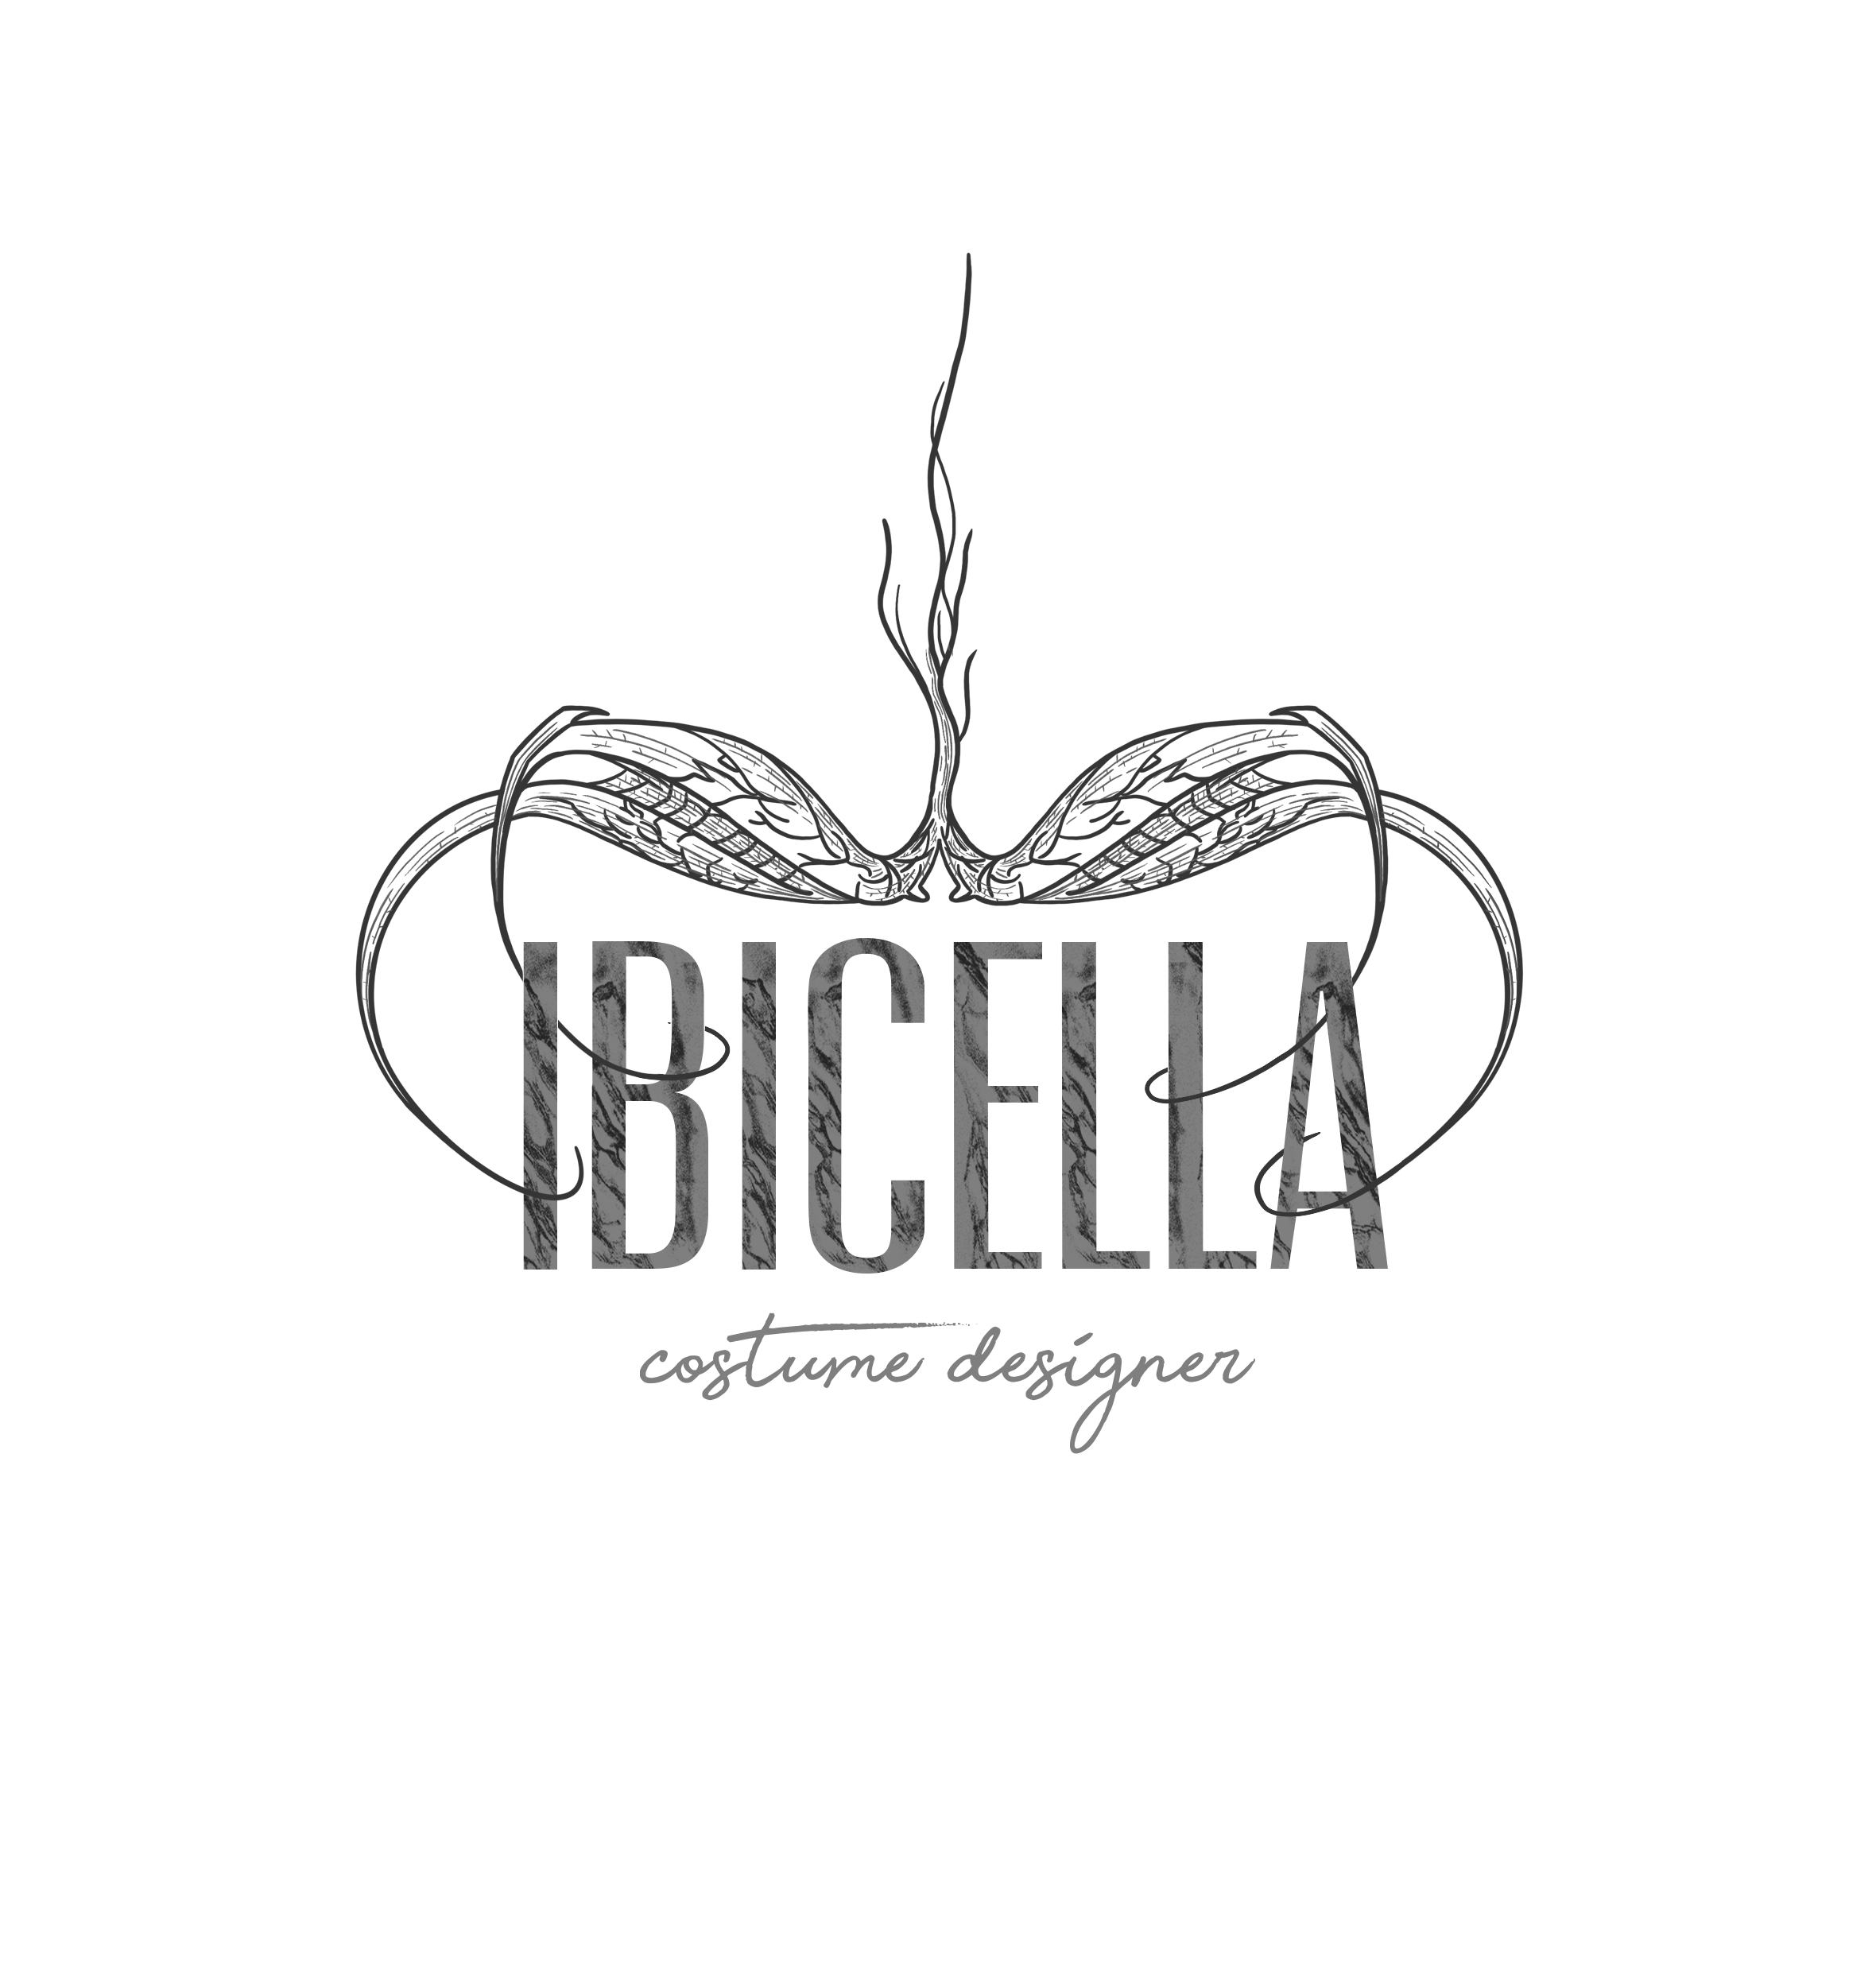 Ibicella costume designer